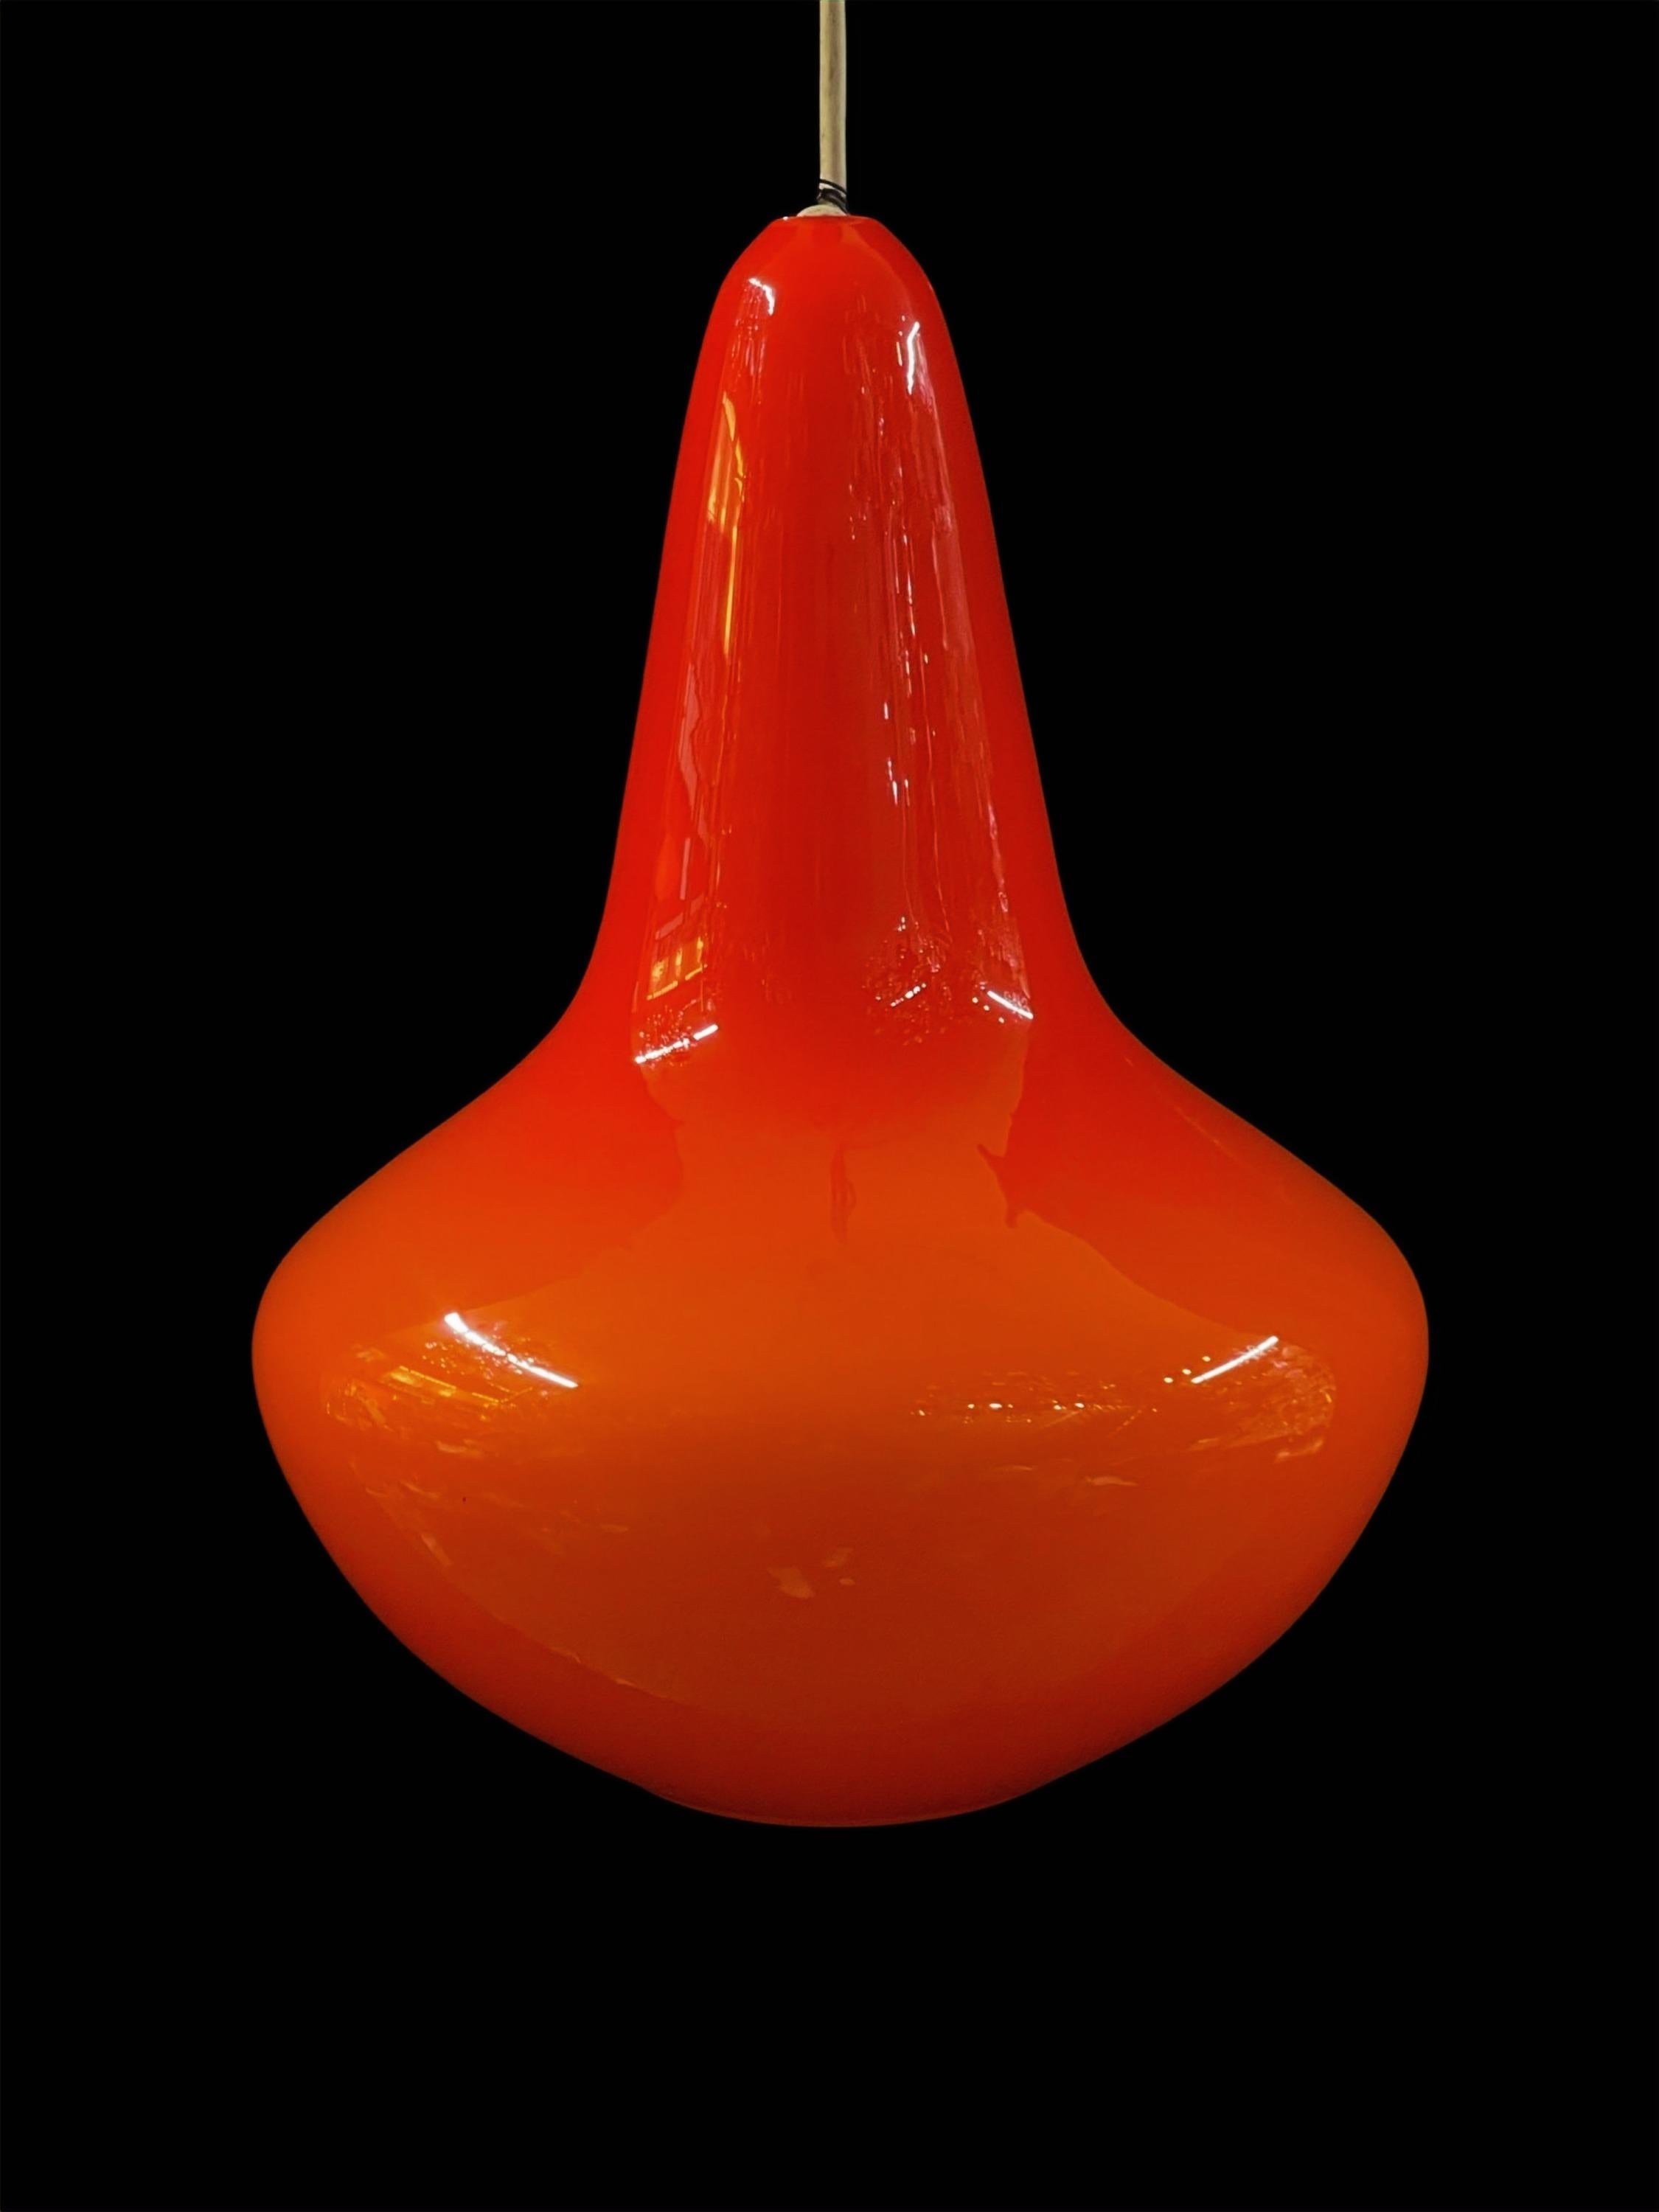 Wir stellen unsere atemberaubende Vintage Bold Orange Glass Pendelleuchte vor, ein zeitloses Stück, das an die lebendige Ära der 1970er Jahre erinnert.

Diese Pendelleuchte strahlt in einem satten, leuchtenden Orangeton und ist nicht nur in